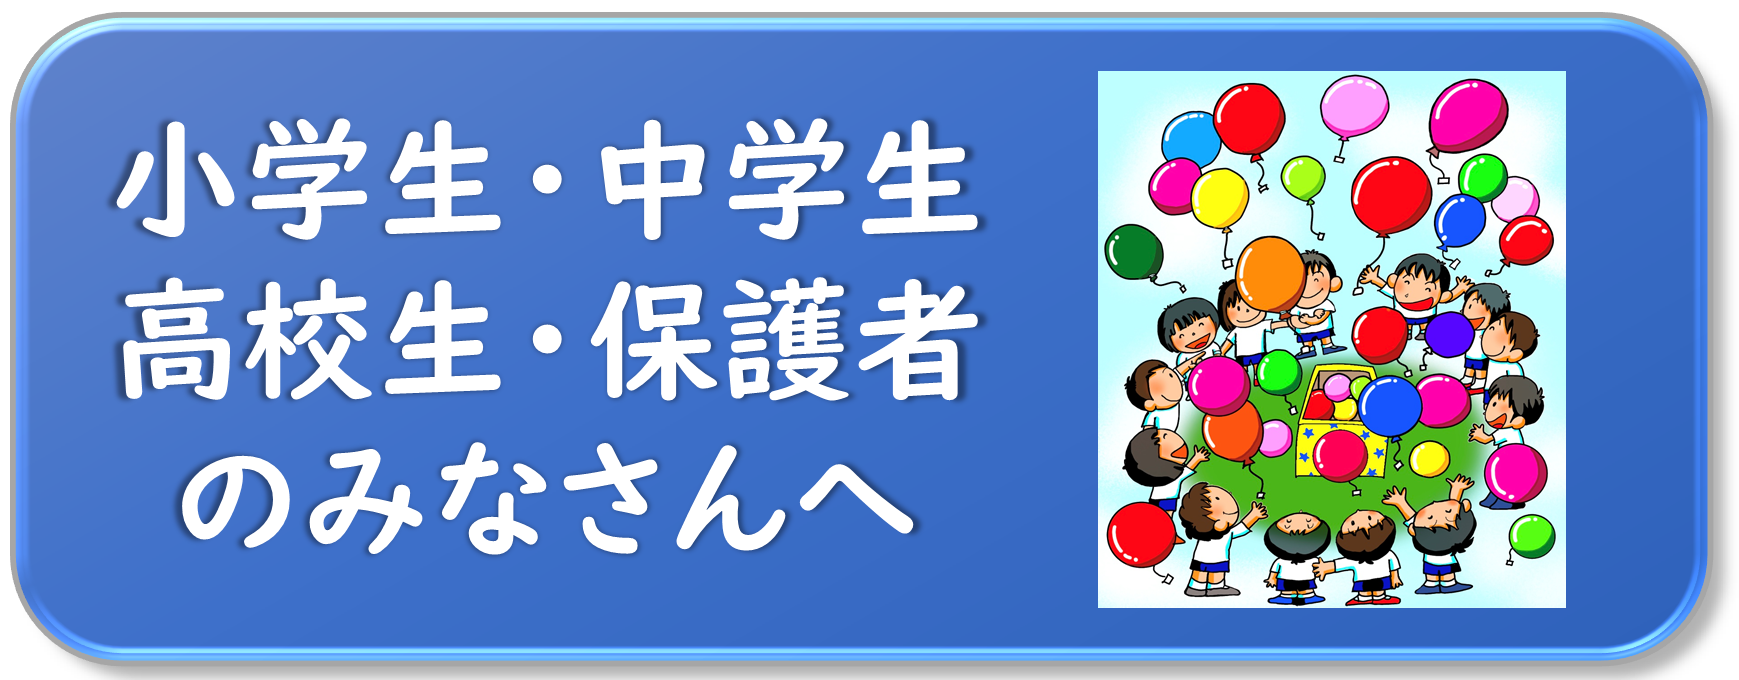 県 マップ 静岡 コロナ 新型コロナウイルス感染症関連情報 函南町ホームページ